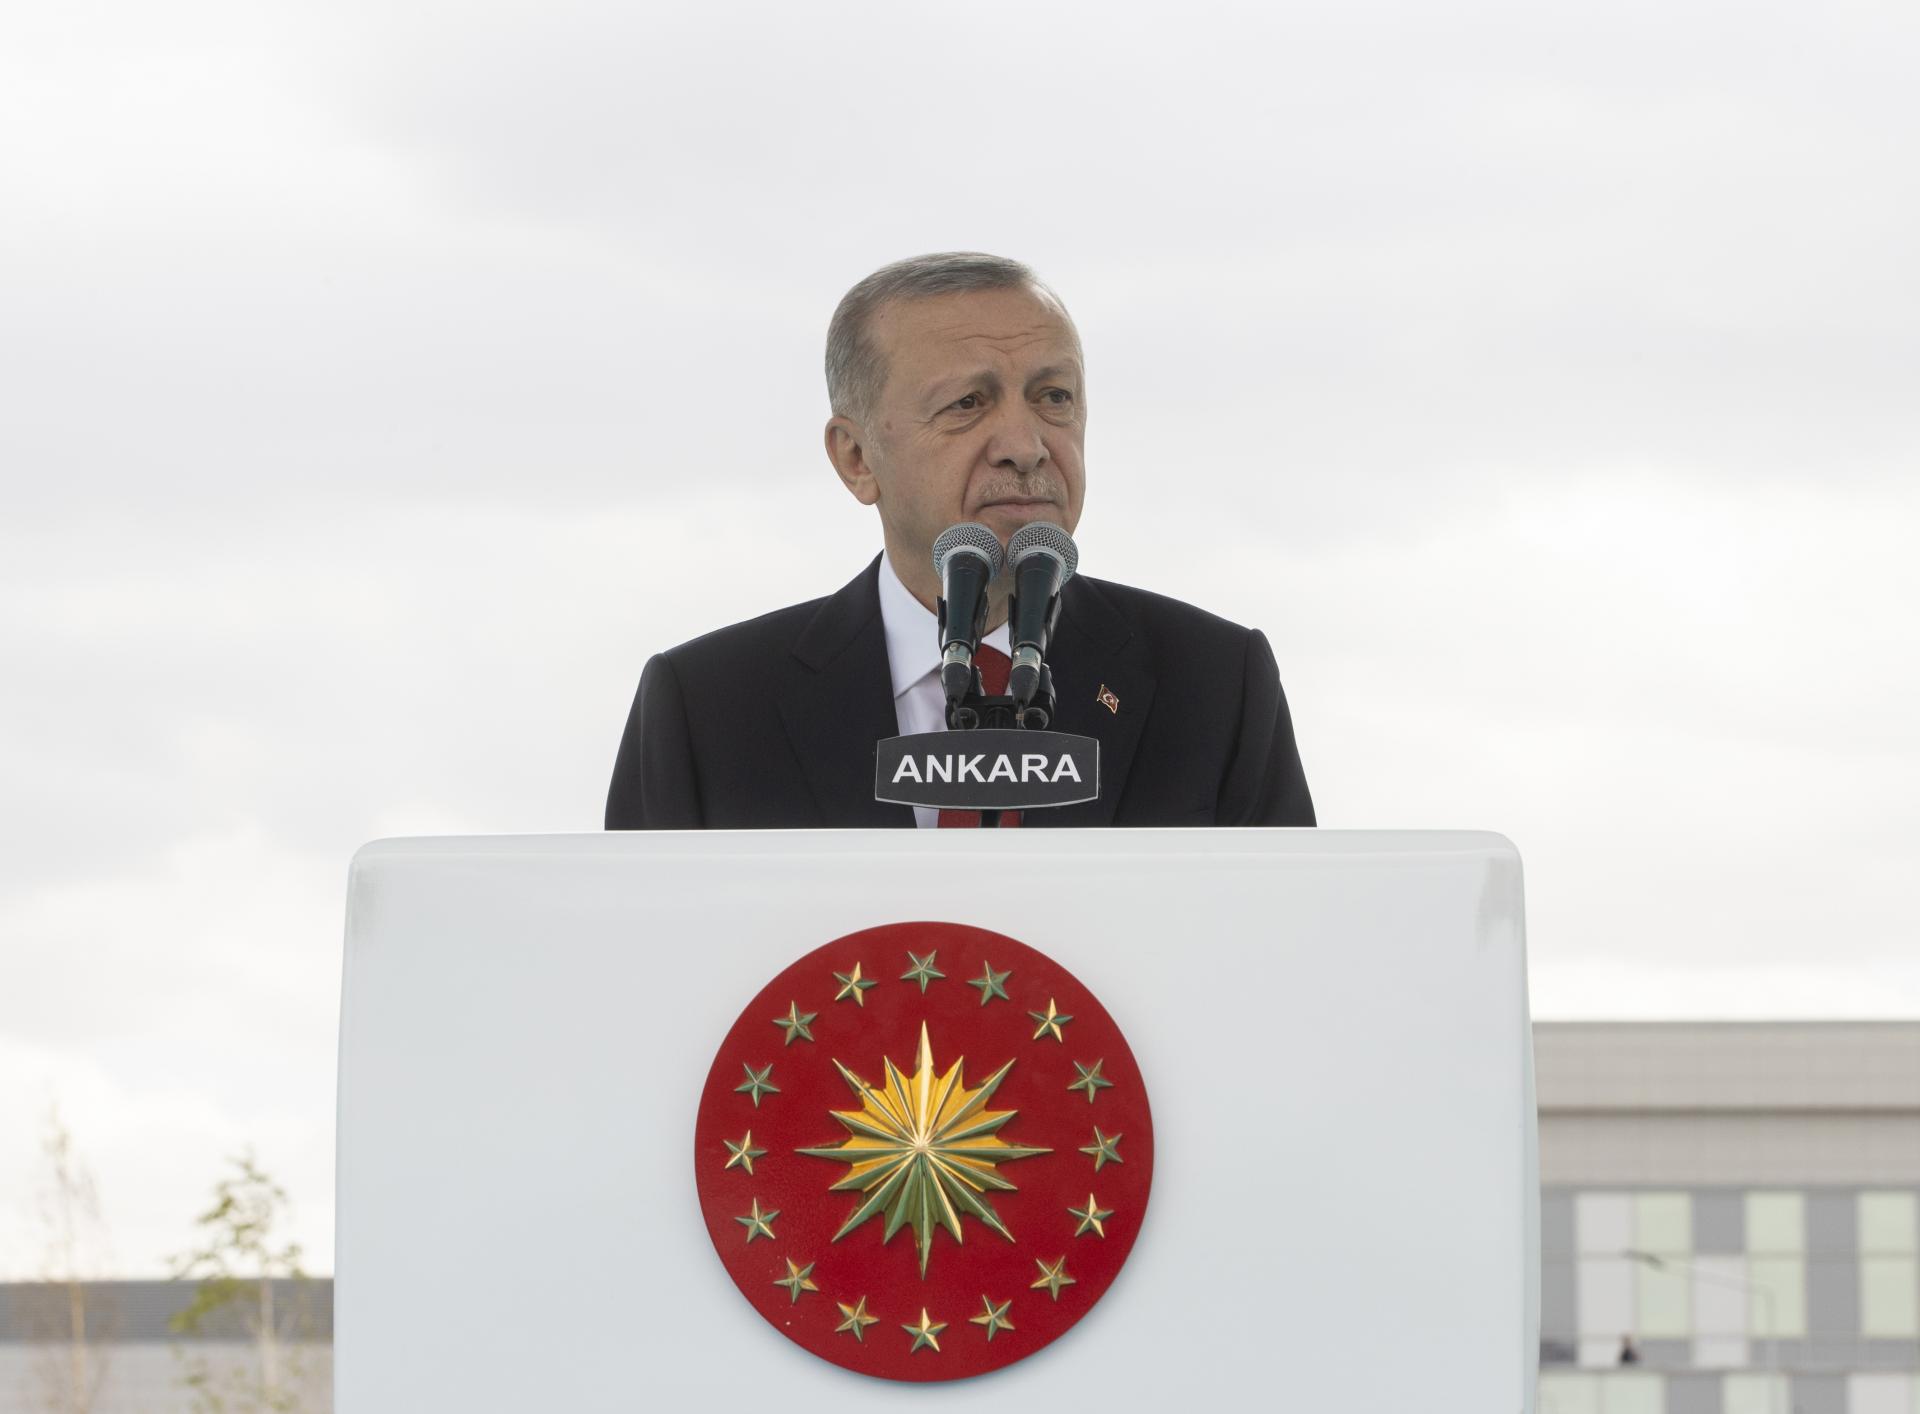 ترکیہ کے سٹی ہسپتال ماڈل  کو اب عالمی ممالک اپنا رہے ہیں: صدر ایردوان